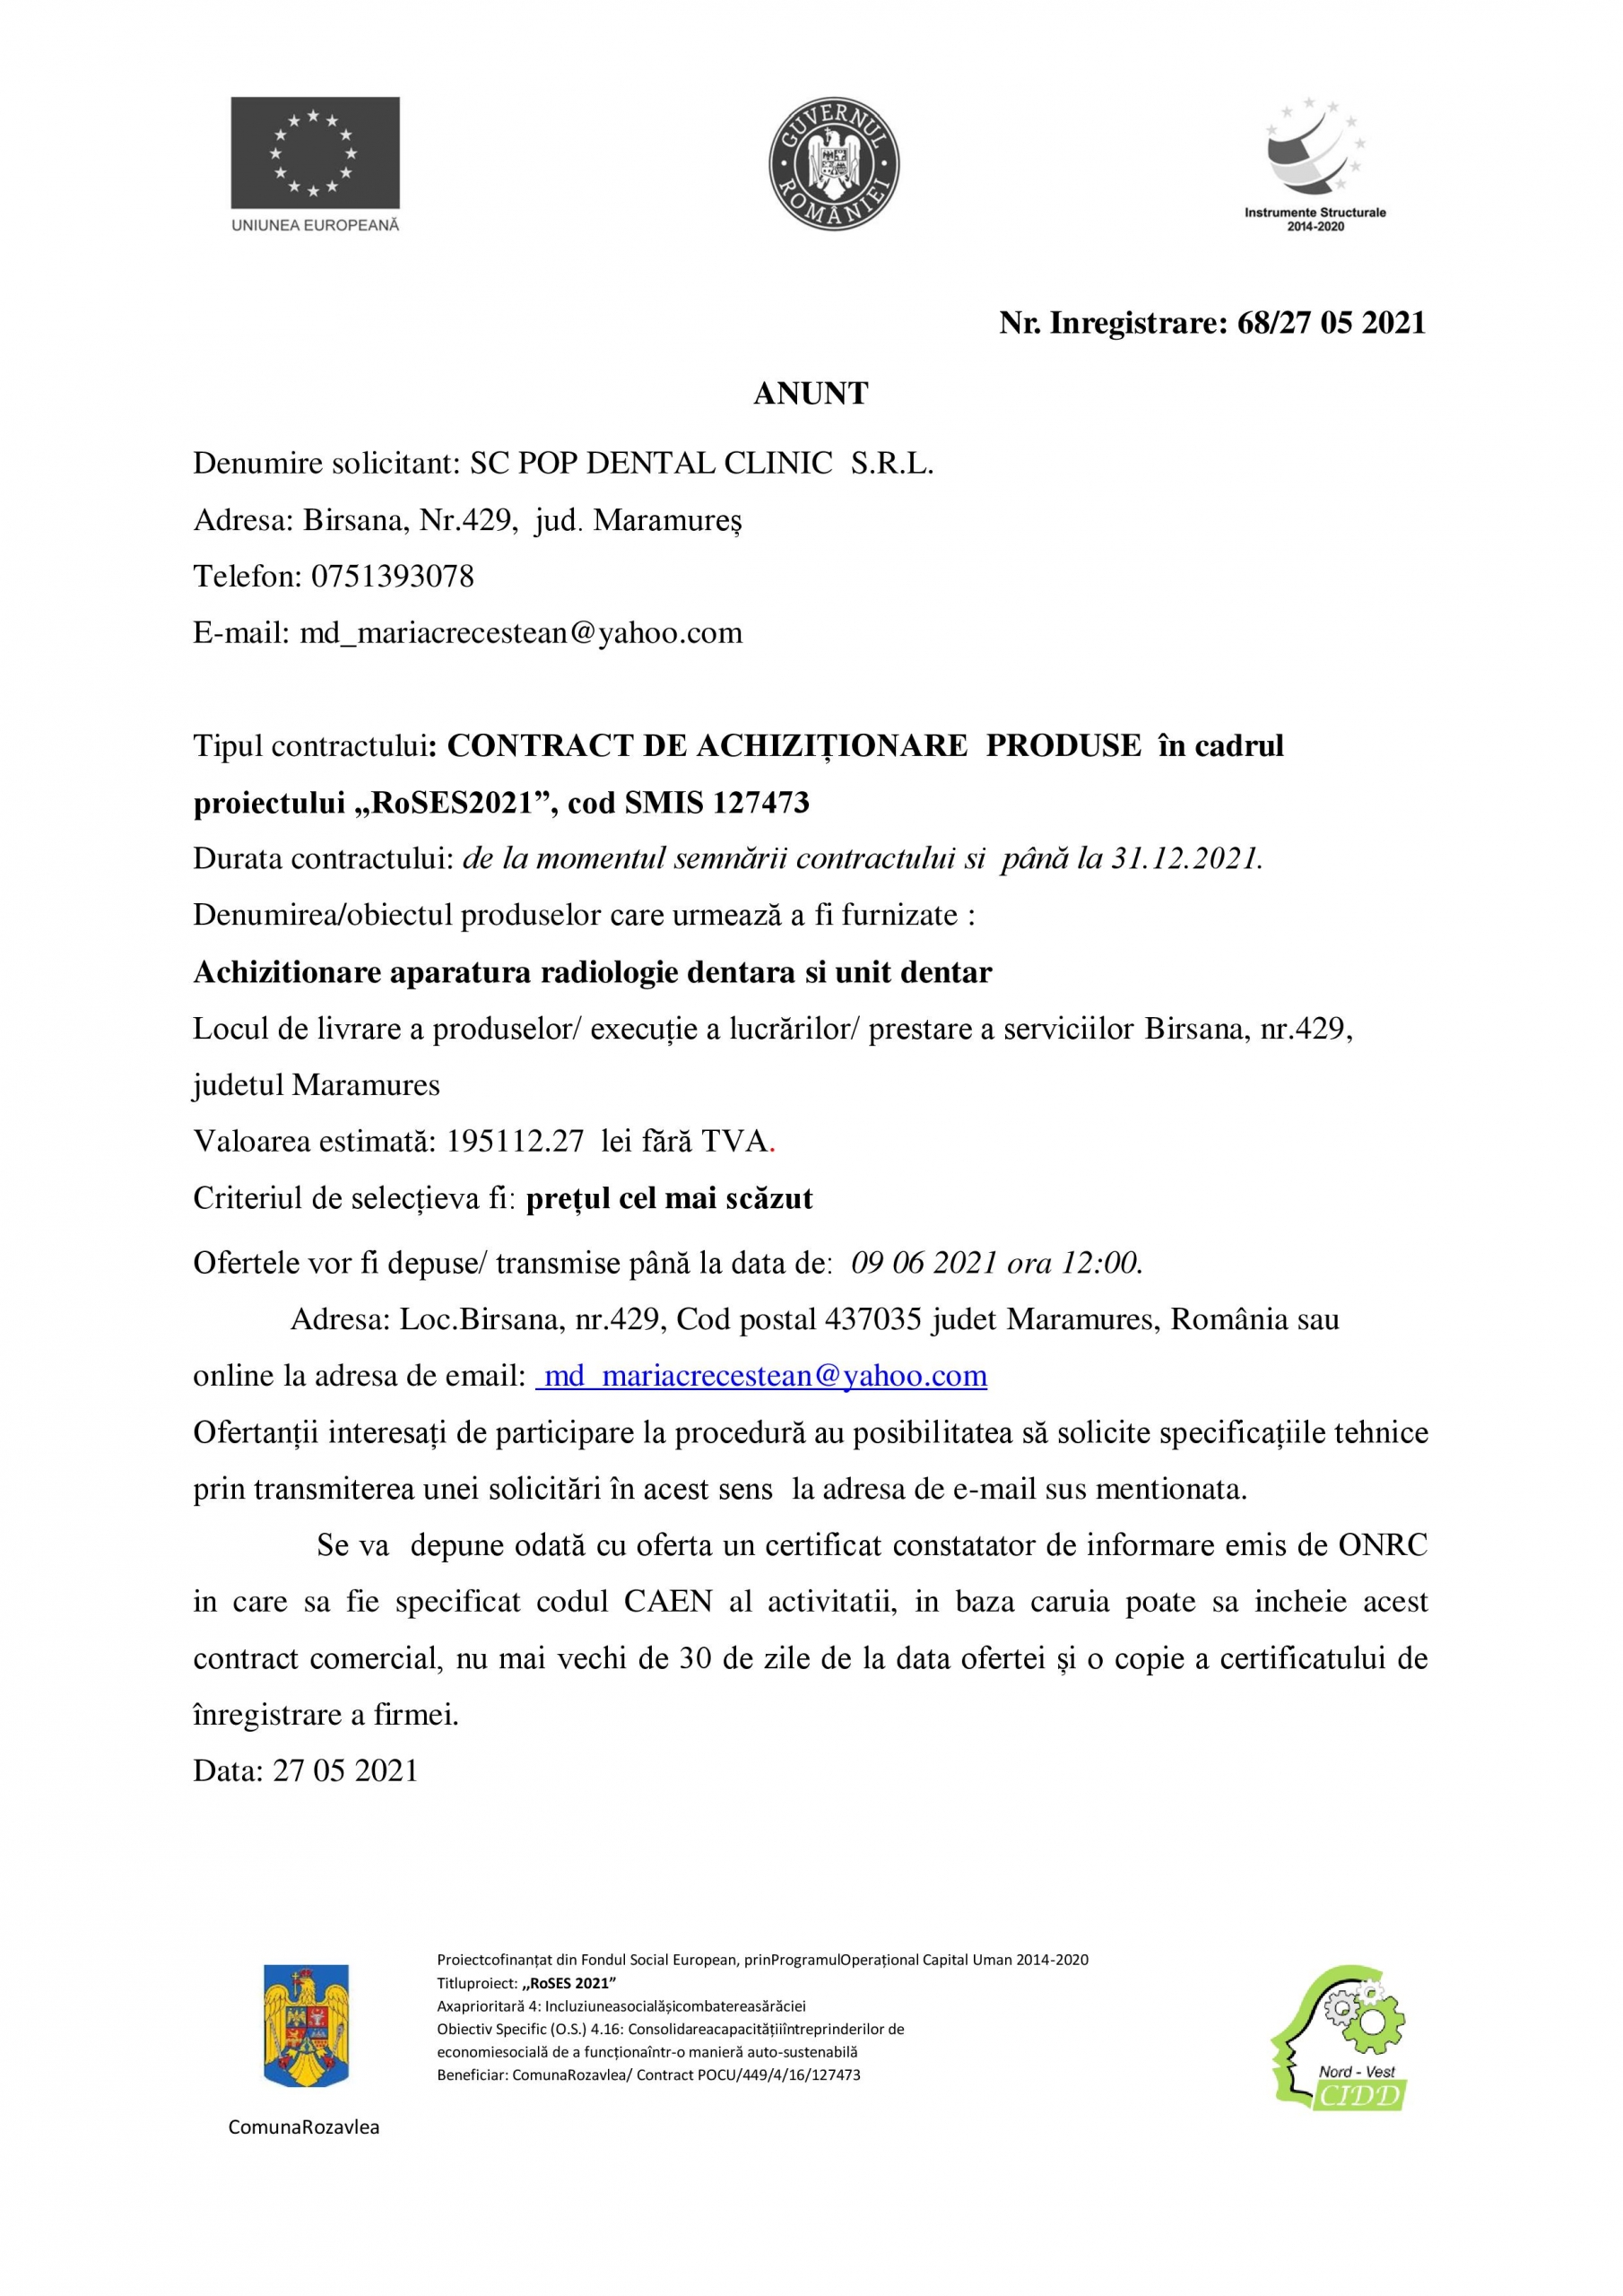 Anunț: Contract de achiziționare produse în cadrul proiectului „RoSES2021”, cod SMIS 127473